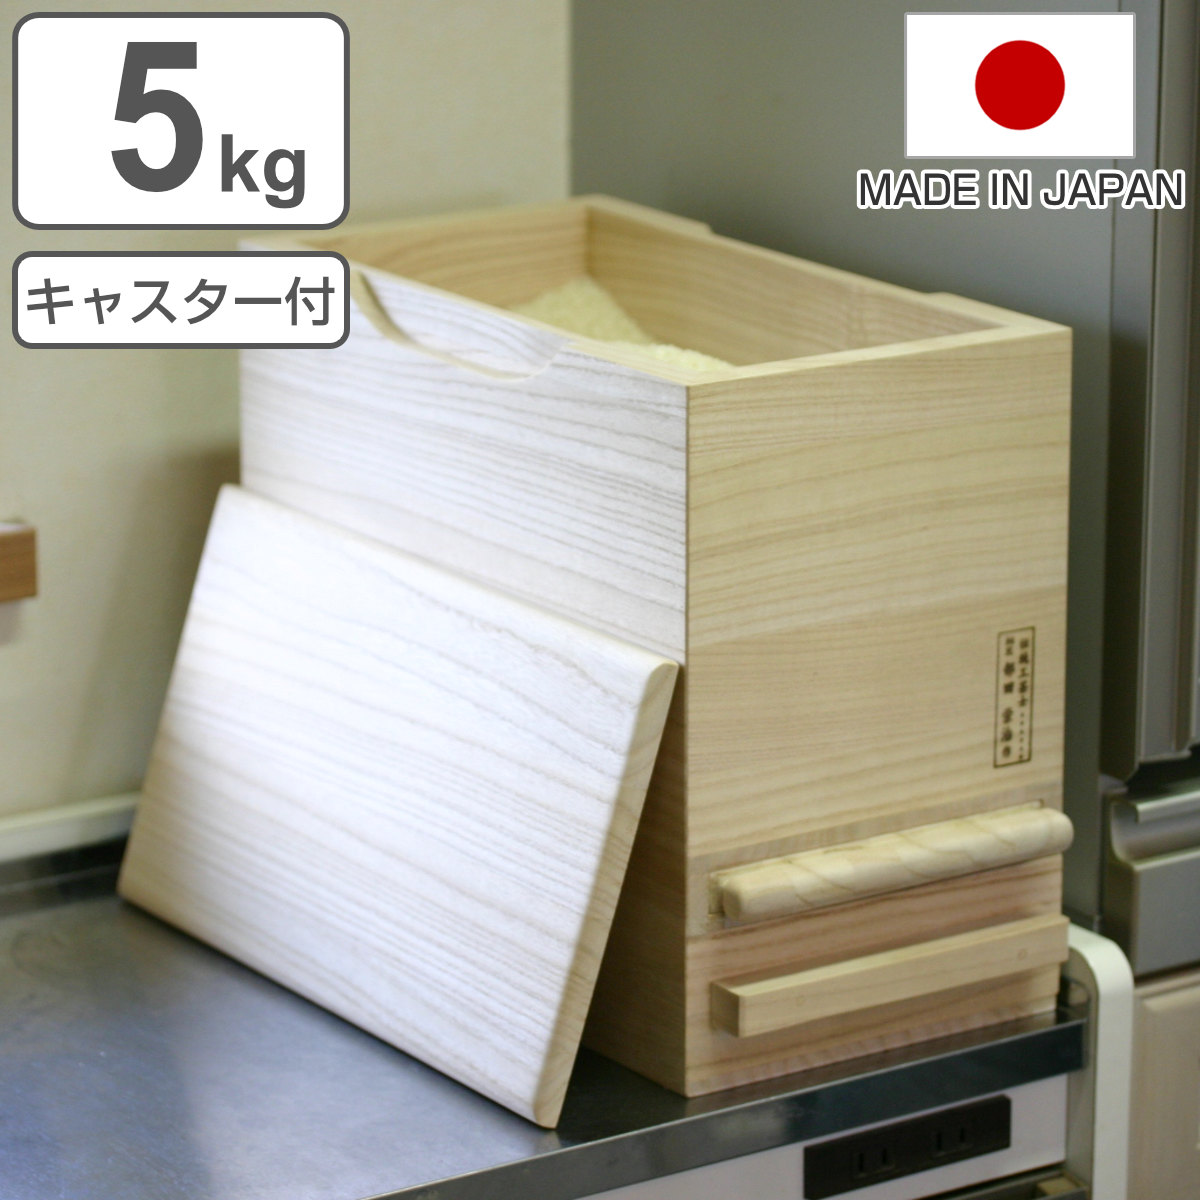 米びつ 計量機能付き 桐製 5kg 1合計量 （ 米櫃 こめびつ ライス